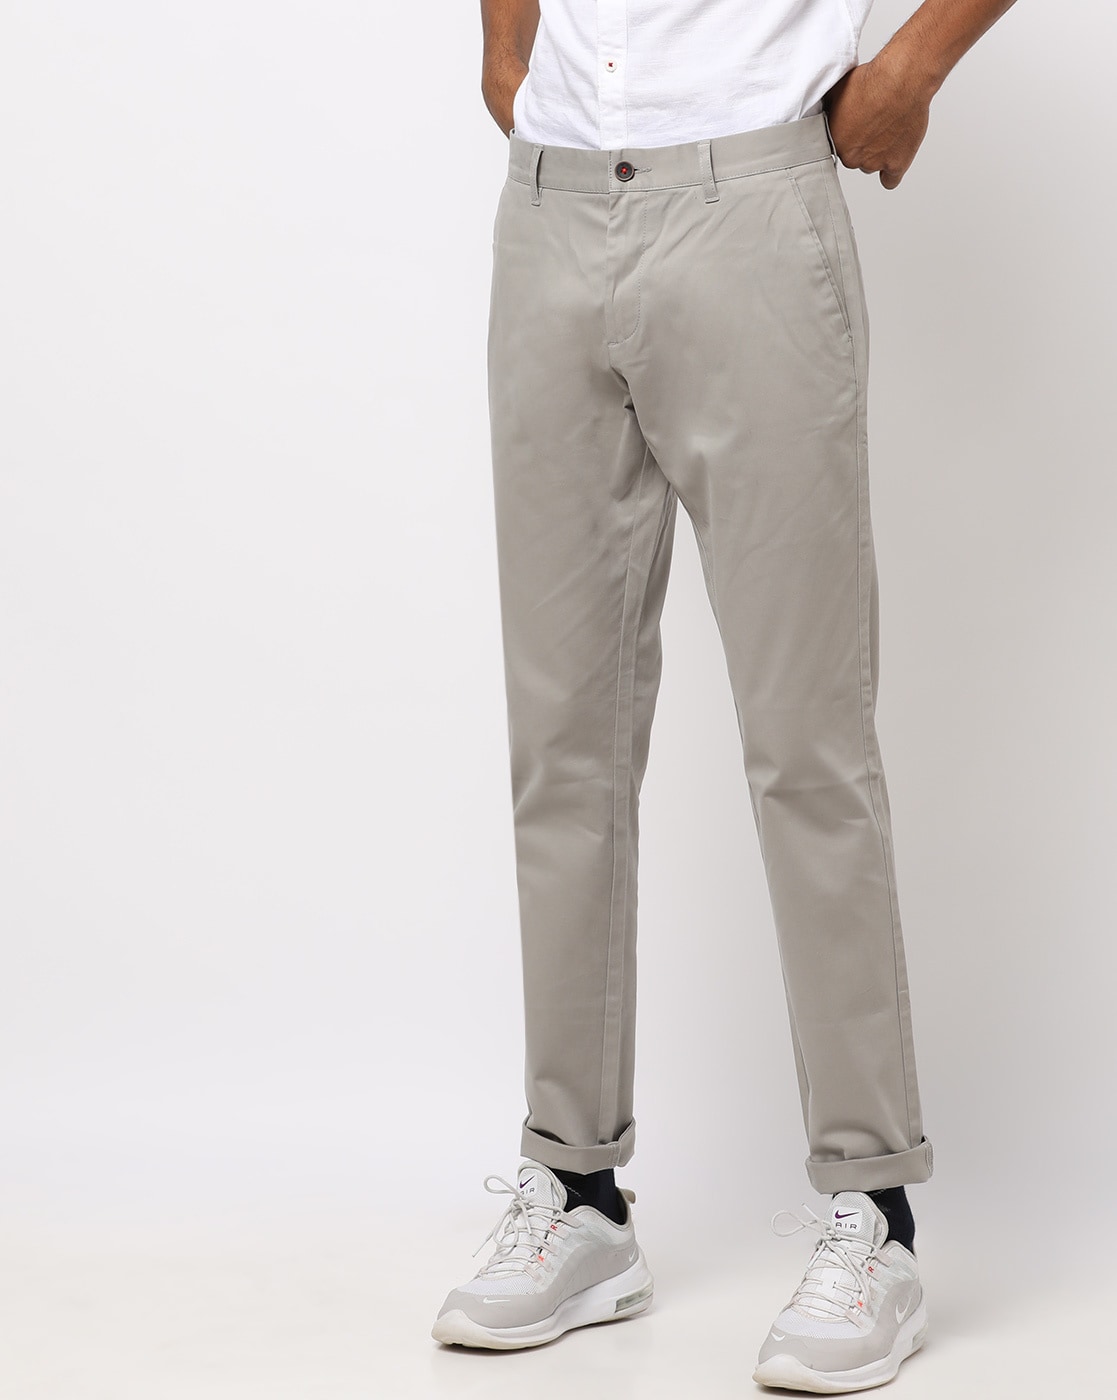 Buy Blue Trousers  Pants for Men by BREAKBOUNCE Online  Ajiocom